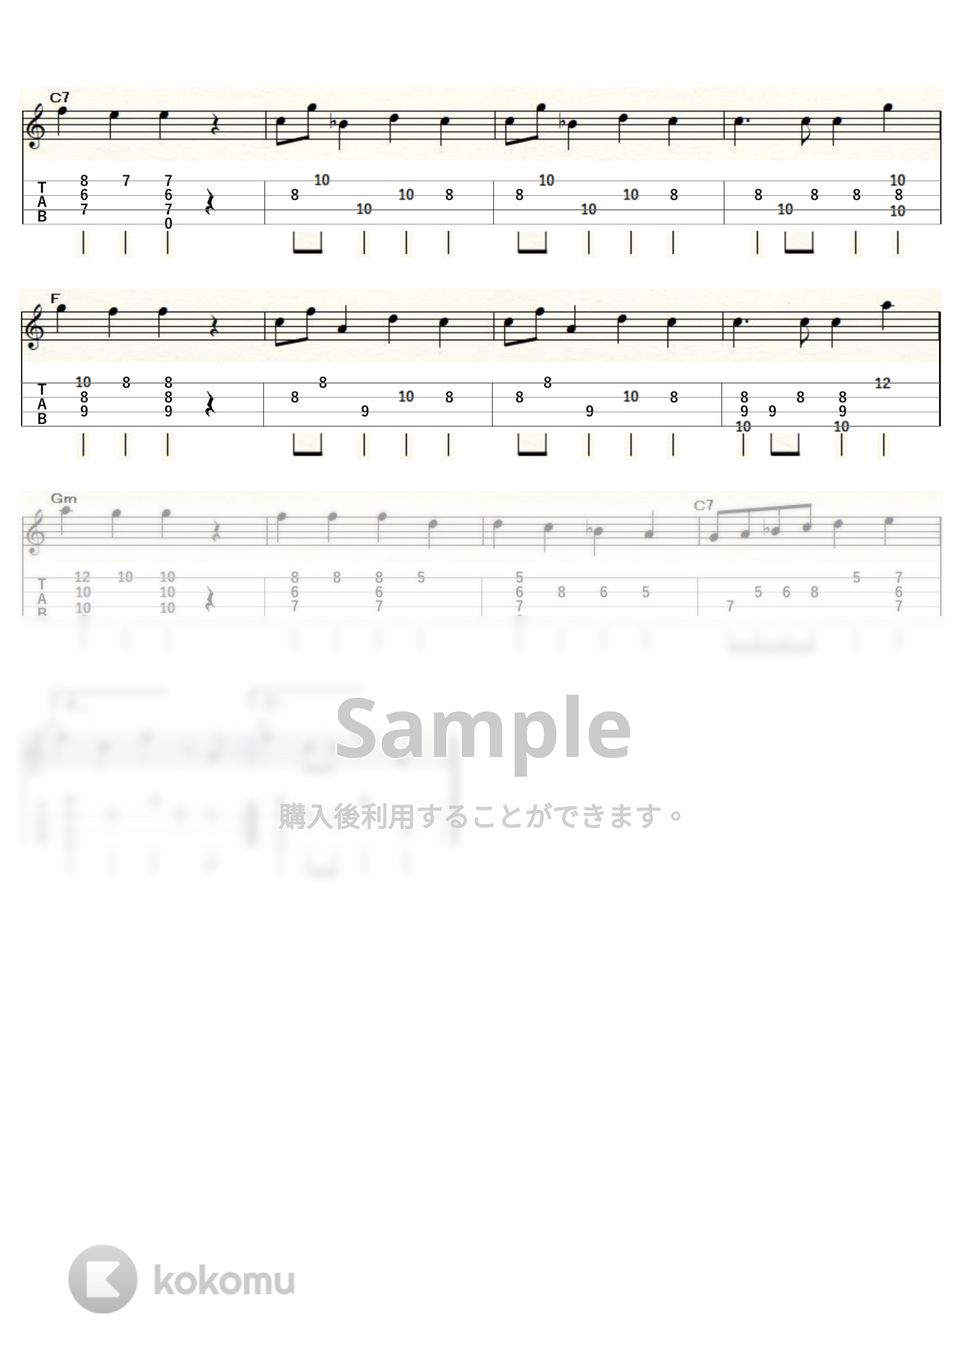 イェッセル - おもちゃの兵隊のマーチ～キューピー３分クッキング～ (ｳｸﾚﾚｿﾛ / Low-G / 中級) by ukulelepapa